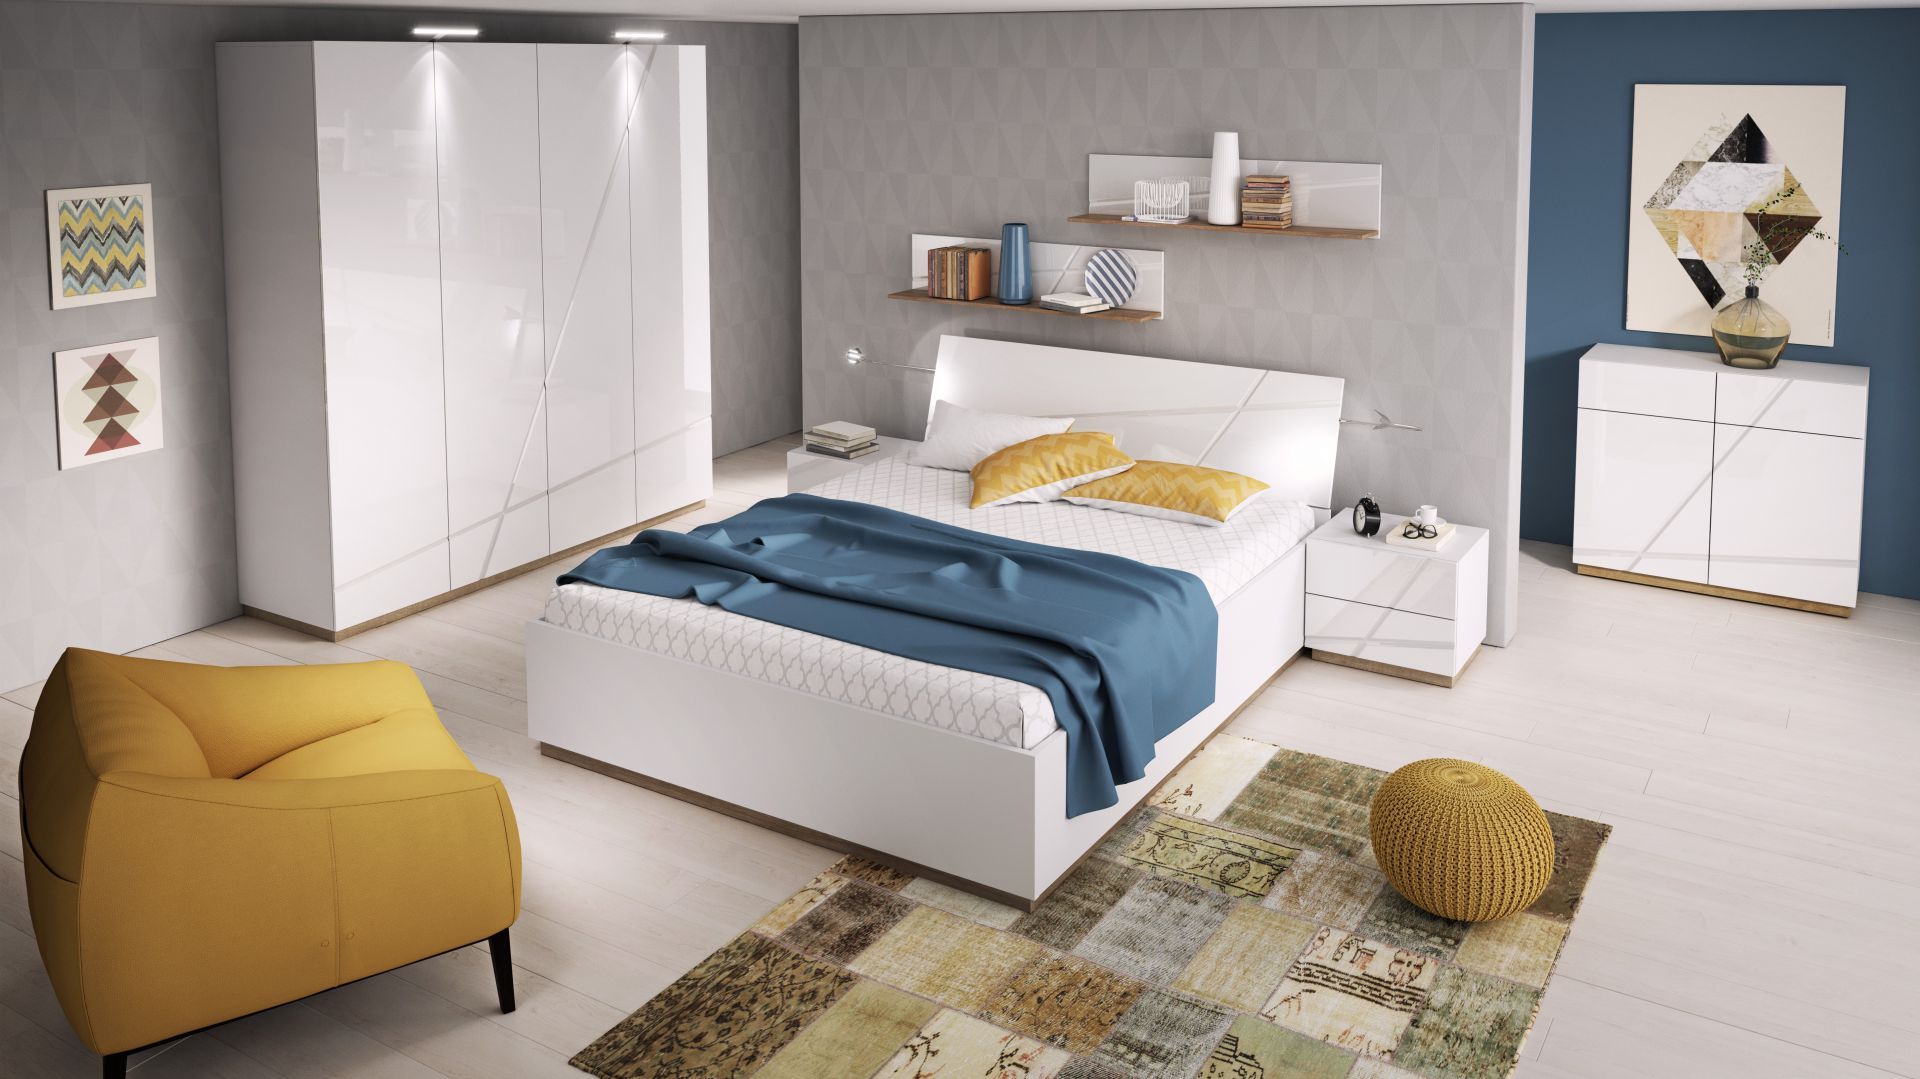 Kolekcja mebli Futura ożywi wnętrze sypialni. Białe meble warto połączyć z dodatkami w soczystych kolorach, np. żółtym lub niebieskim. Fot. Agata S.A.